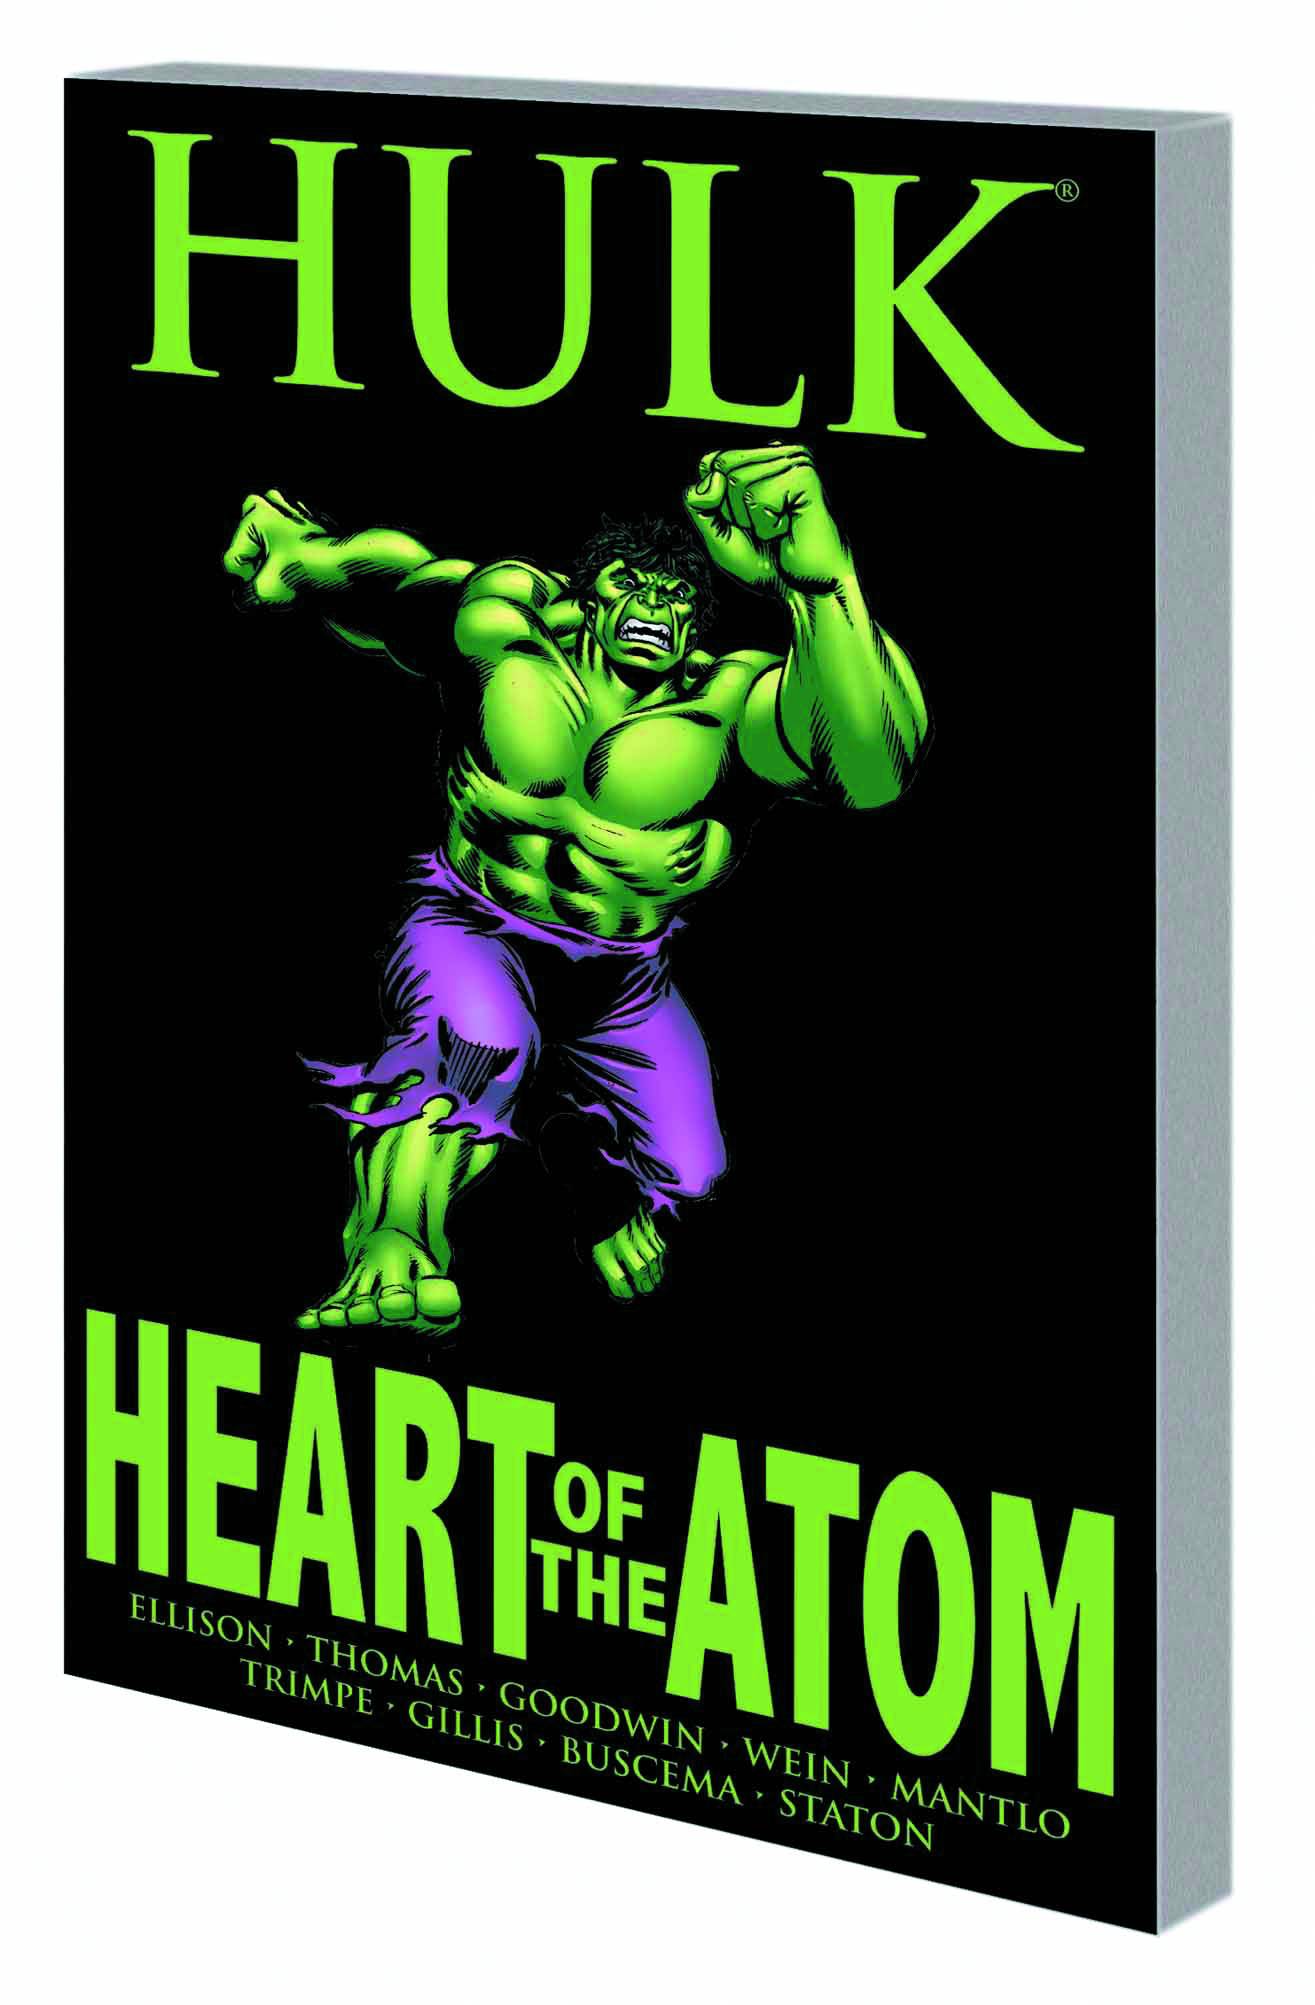 Hulk Heart of Atom Graphic Novel